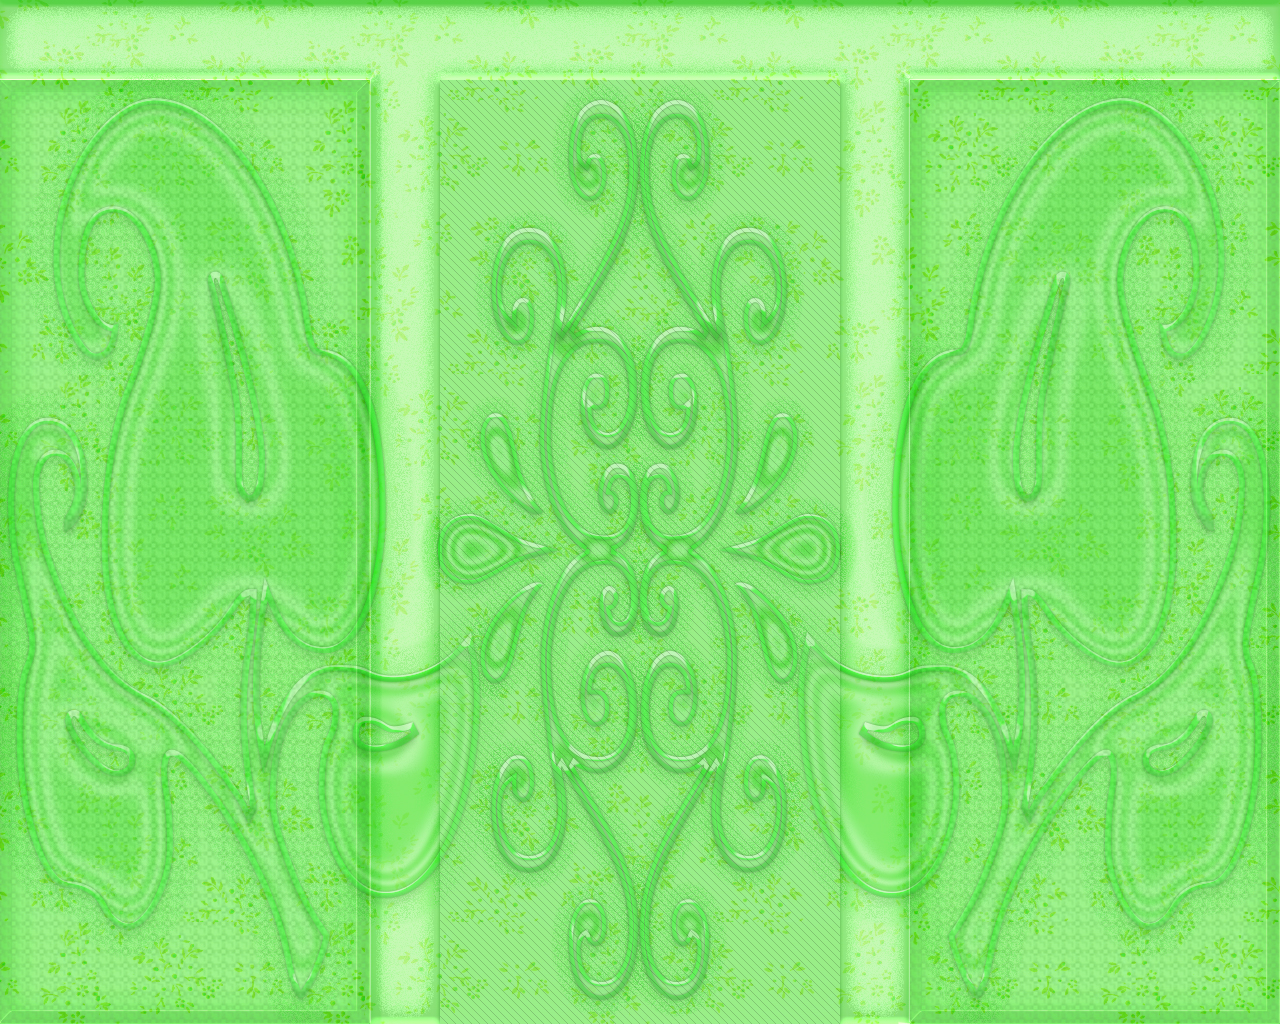 Mozaic Light Green Pattern Art